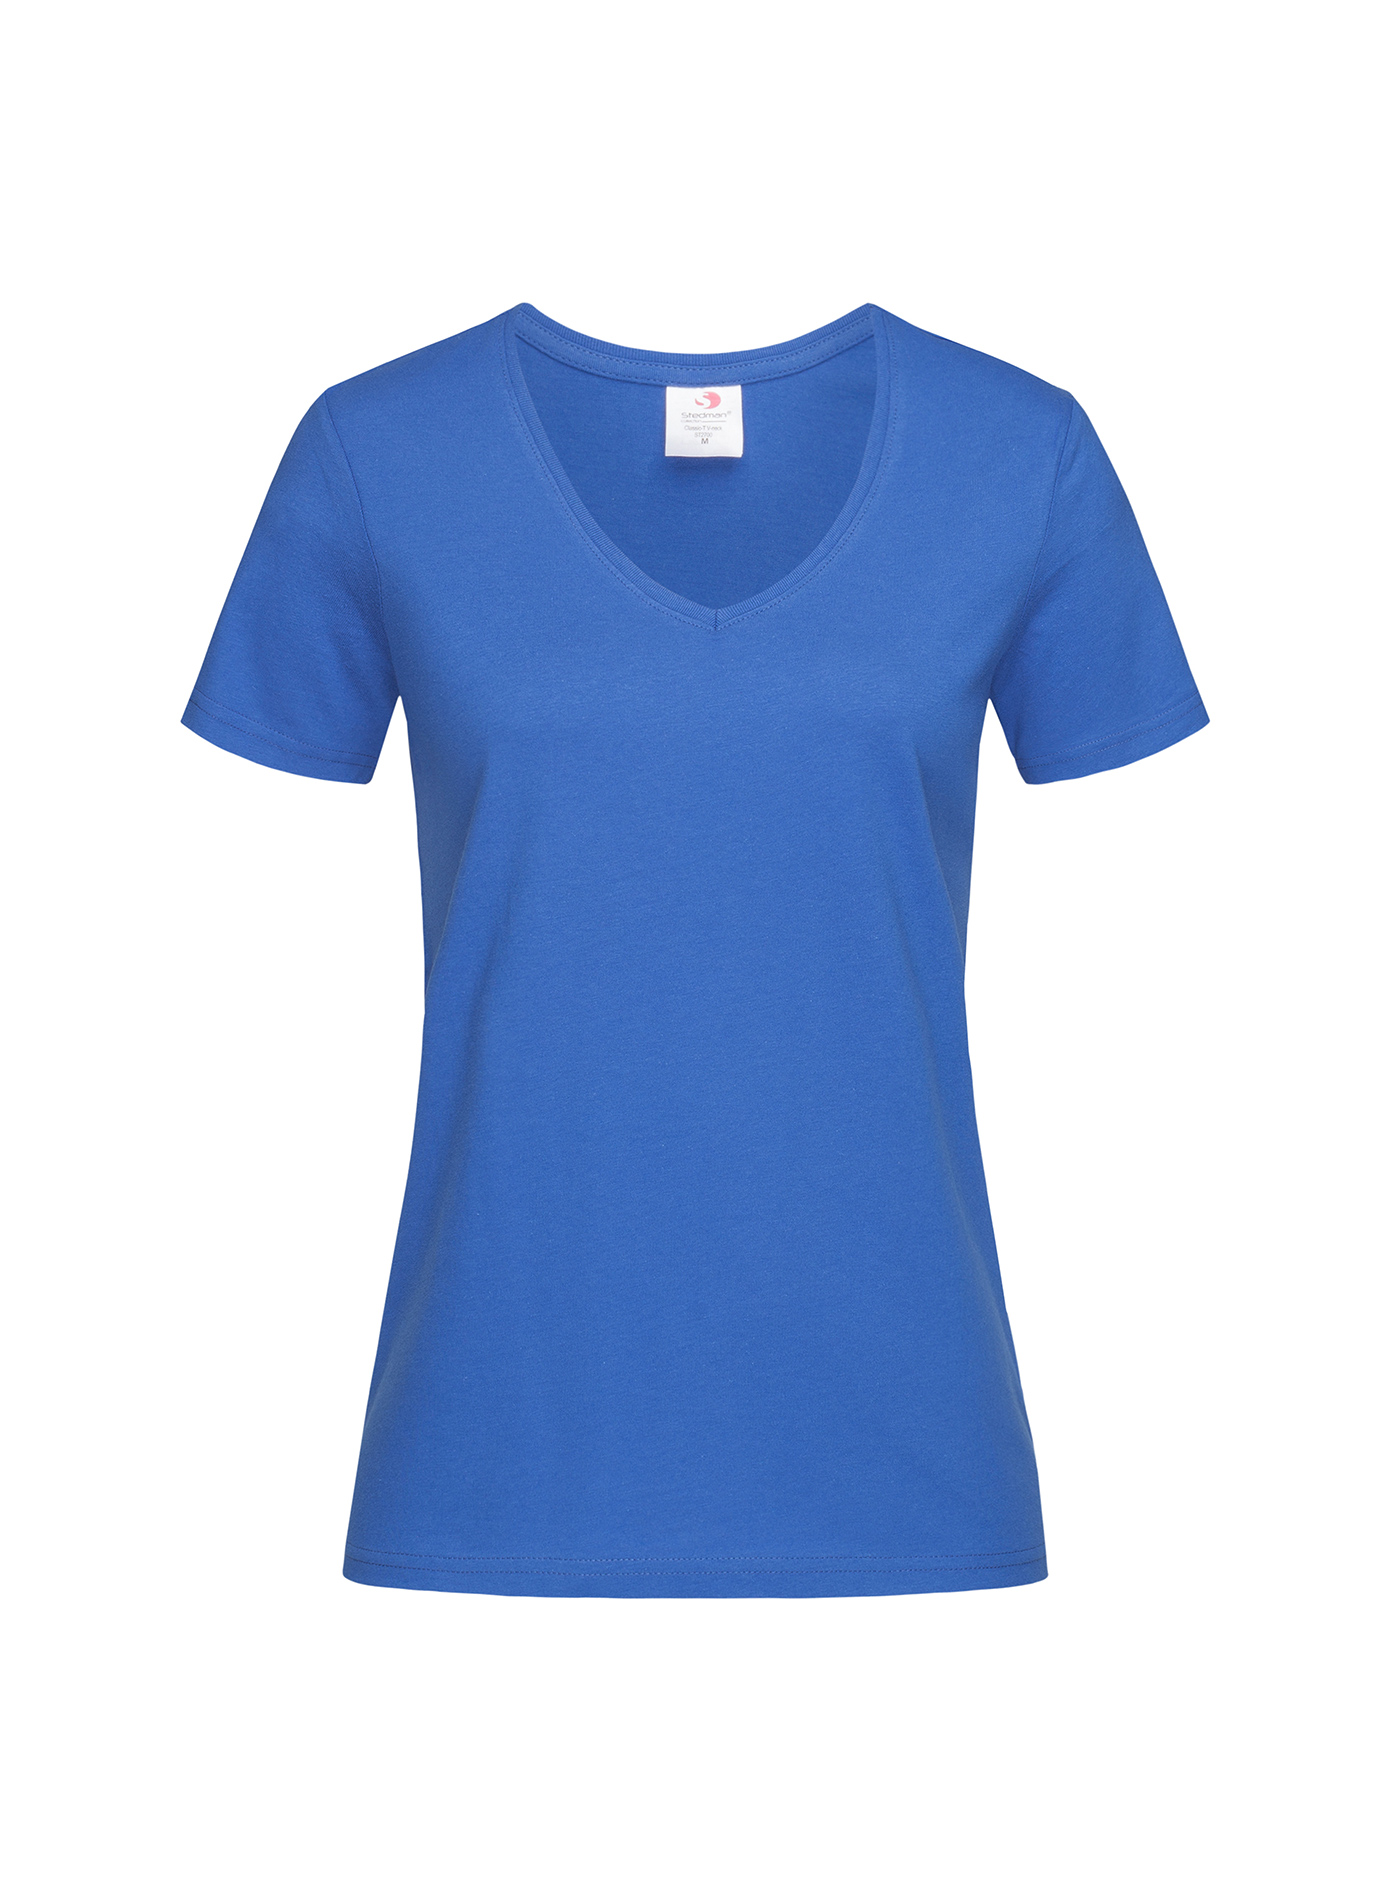 Dámské tričko s V-výstřihem Stedman - Královská modrá S